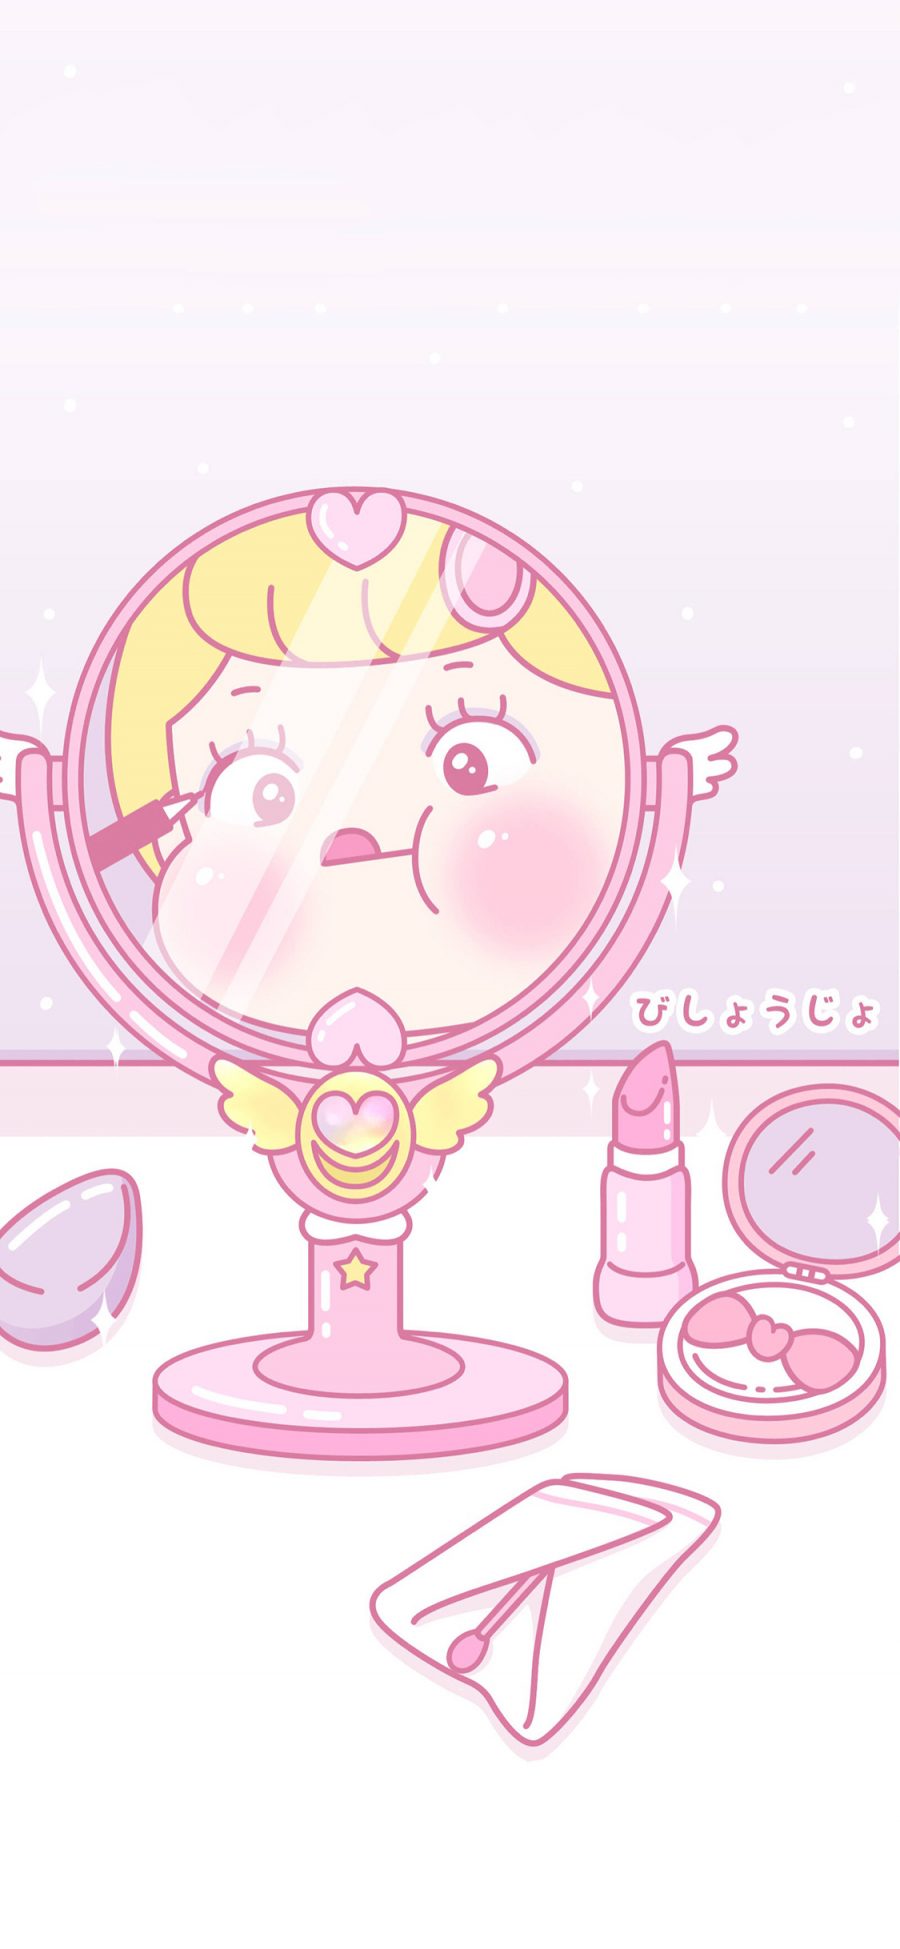 [2436×1125]萝莉 卡通 粉色系 画眼线 苹果手机动漫壁纸图片